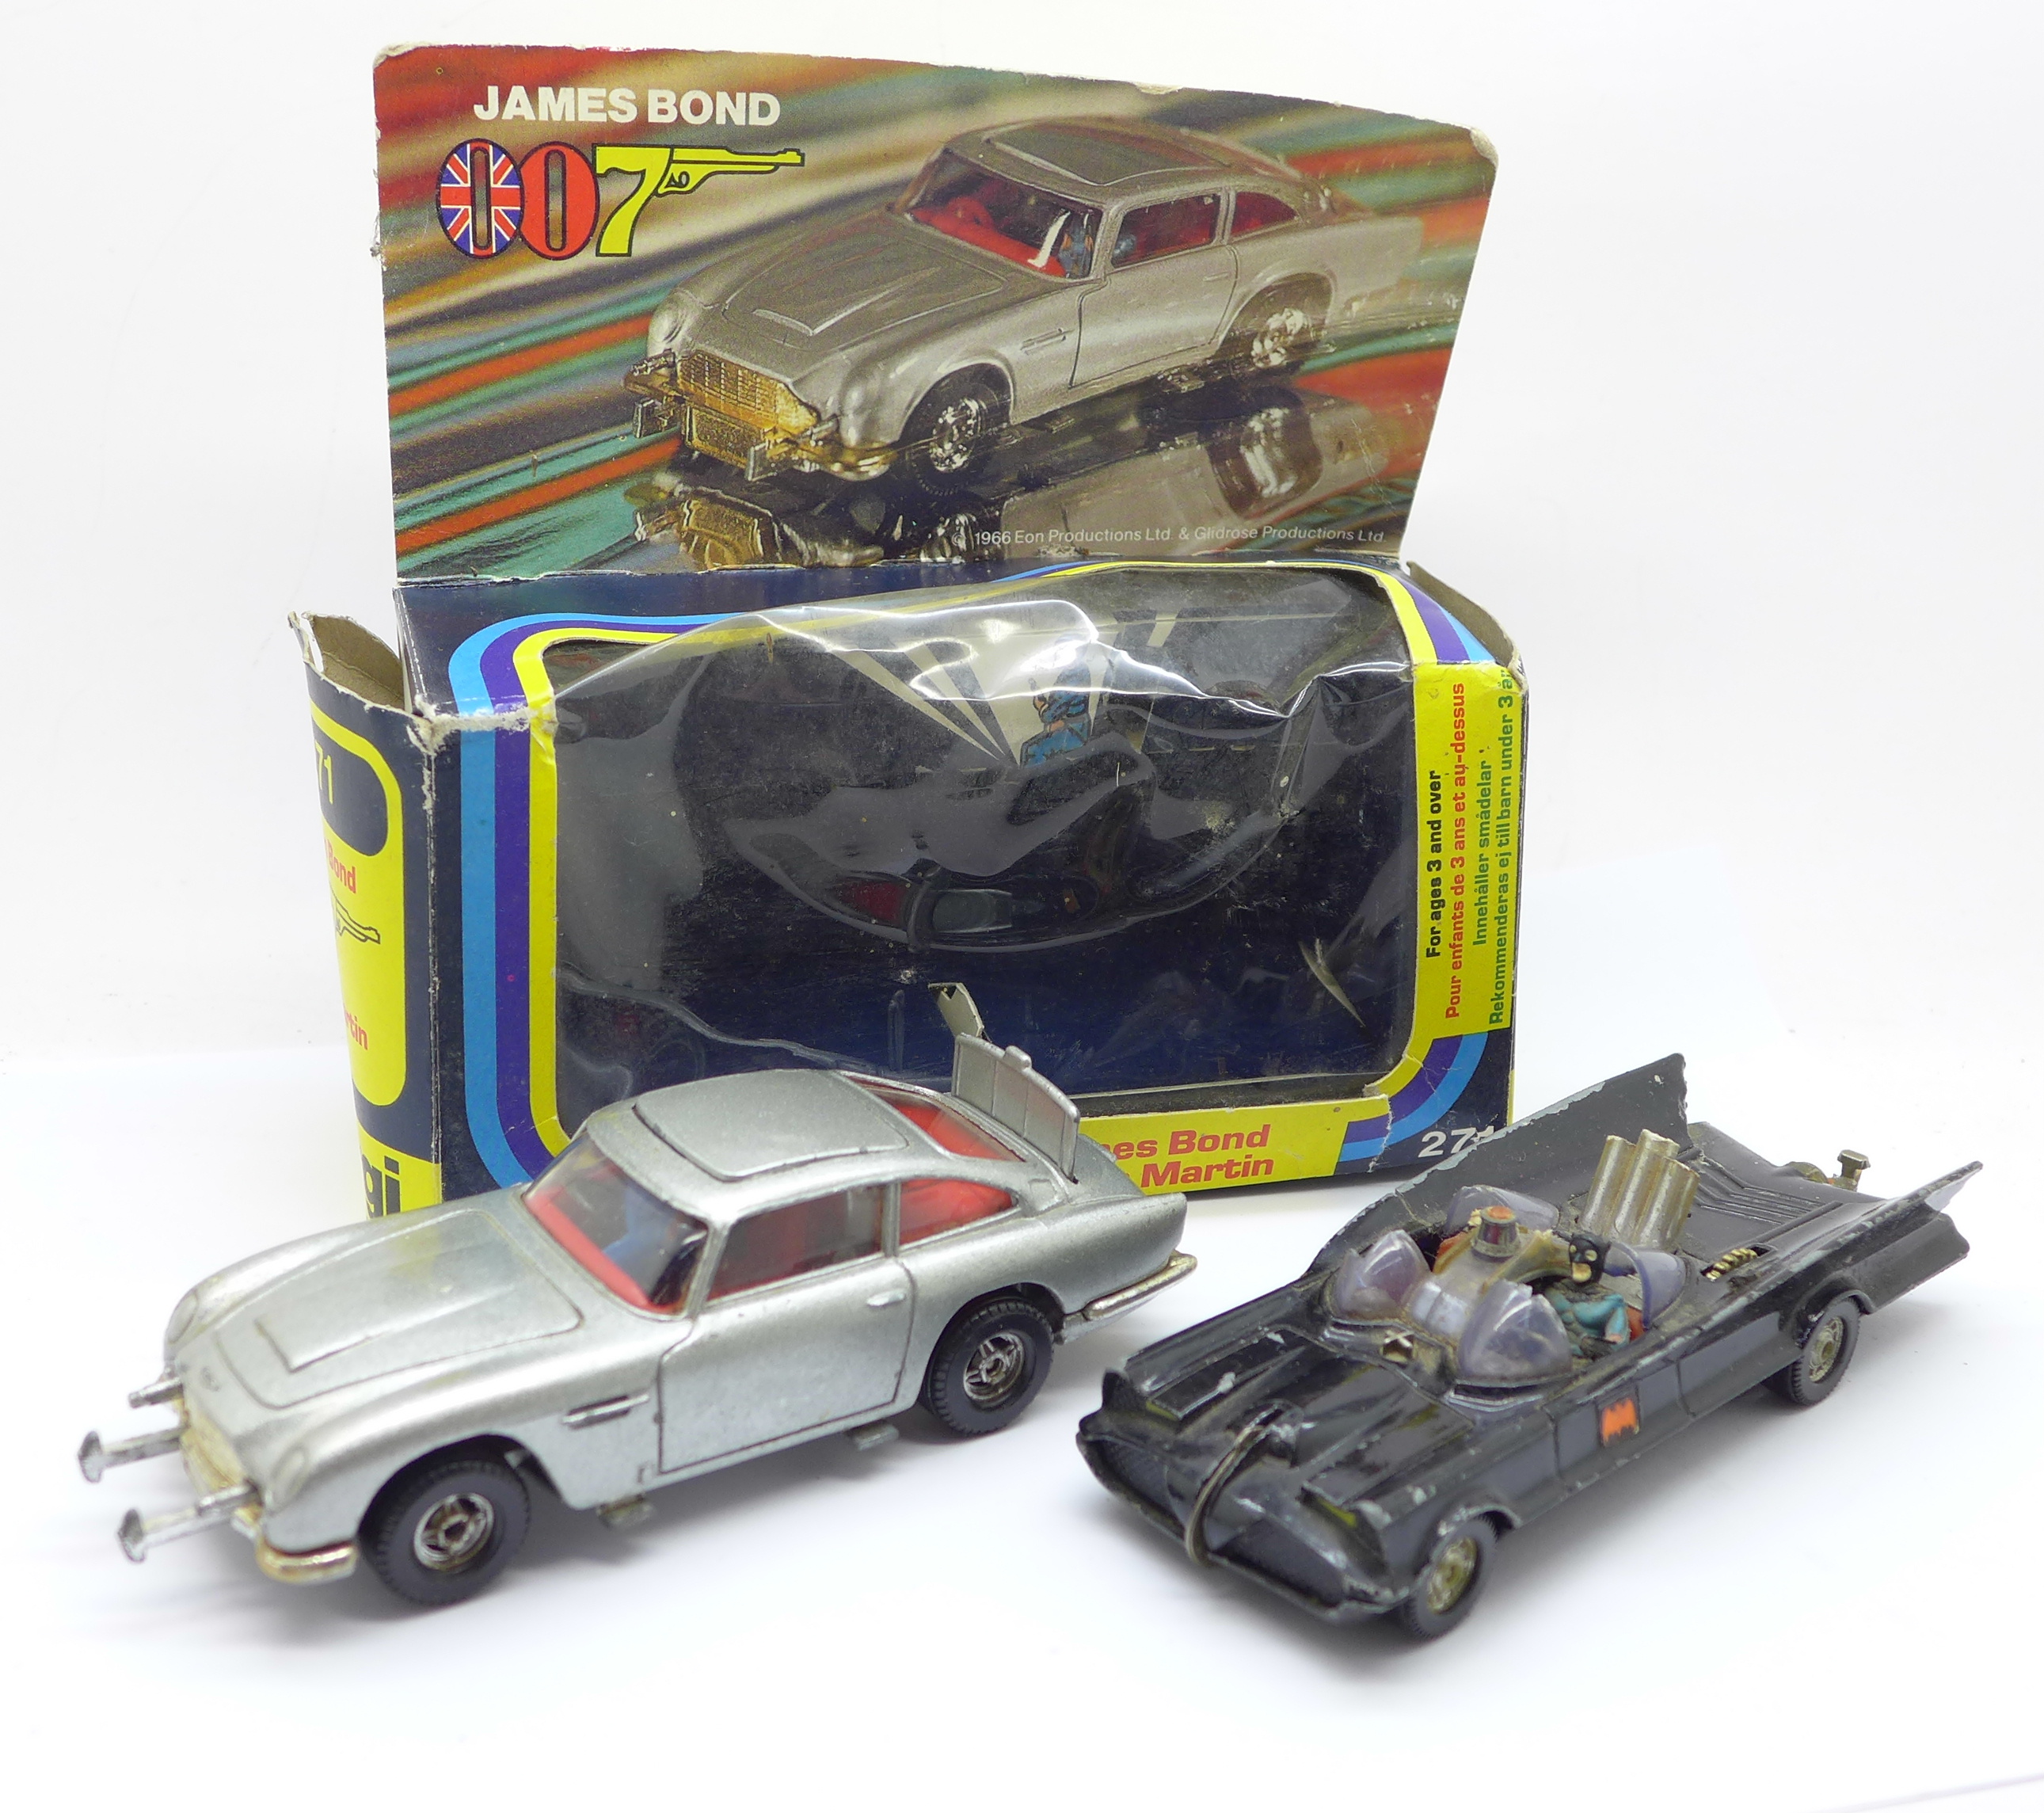 A Corgi 271 James Bond Aston Martin car, boxed, and a Corgi Toys Batman Batmobile